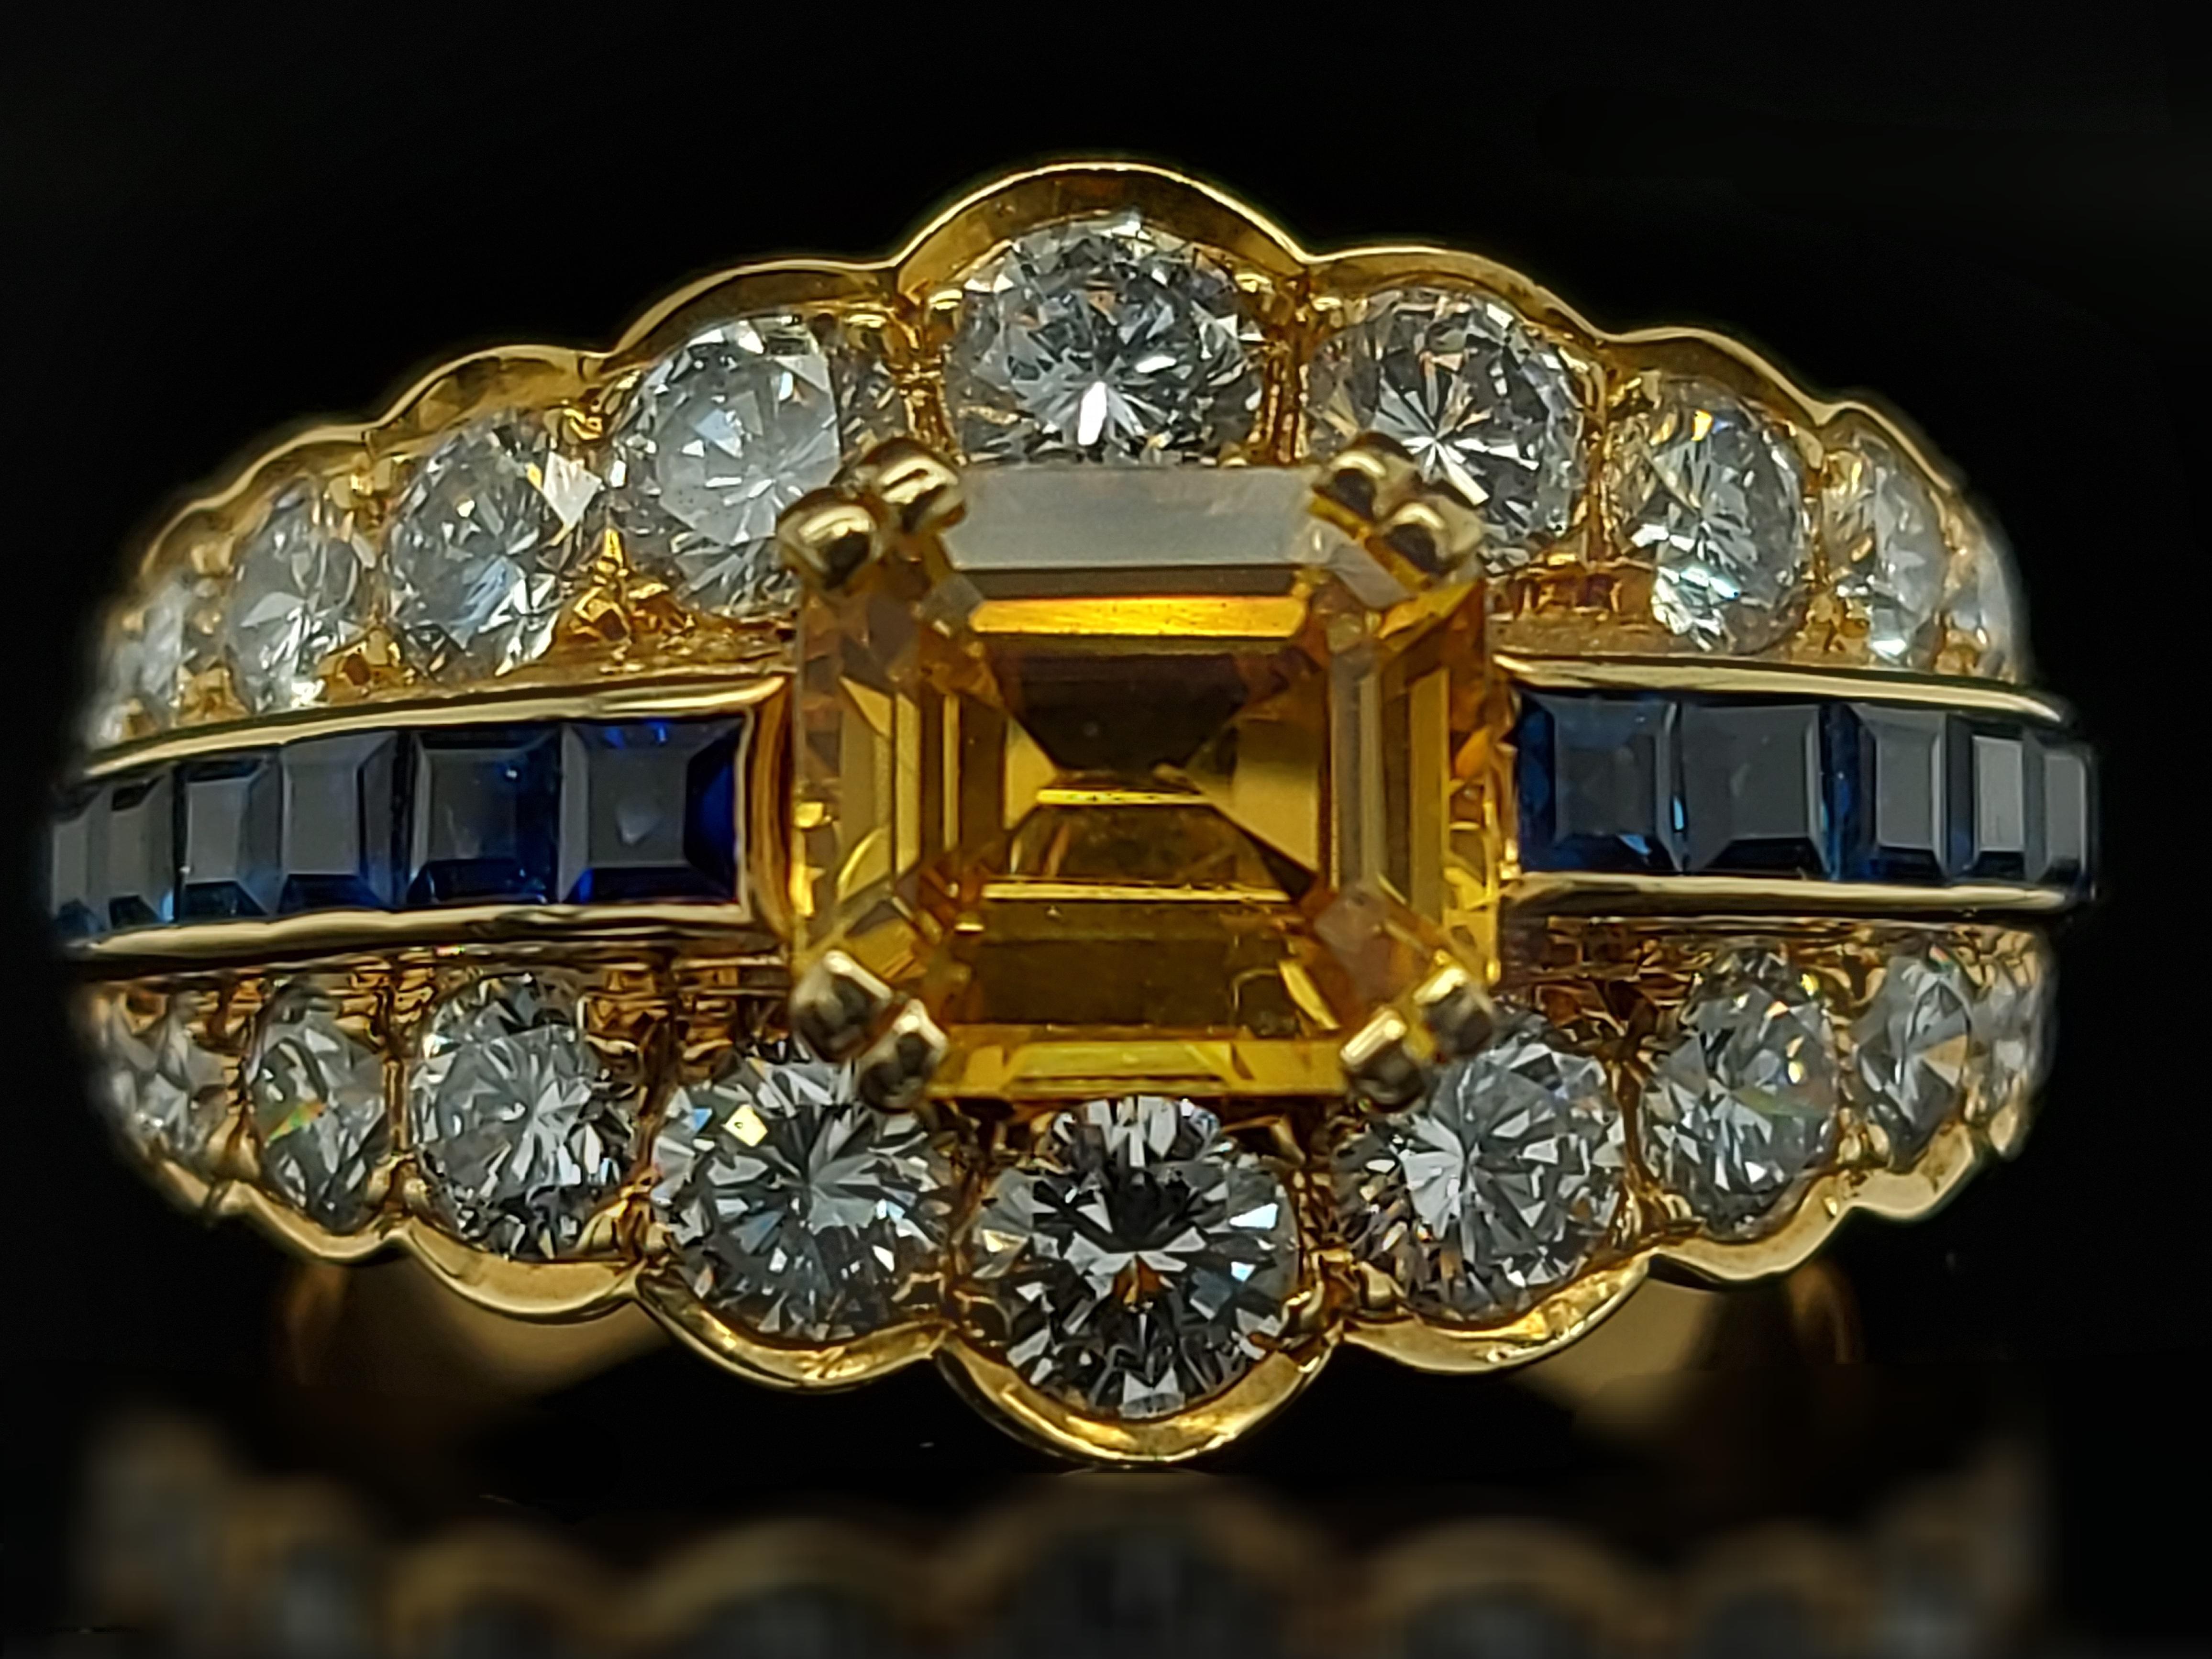 Magnifique bague en or jaune de 18kt avec grand saphir jaune, saphirs bleus et diamants.

Saphir : 12 petits saphirs bleus de taille princesse et un grand saphir jaune de taille émeraude d'environ 50 cts. 1.50 cts

Diamants : 24 diamants taille